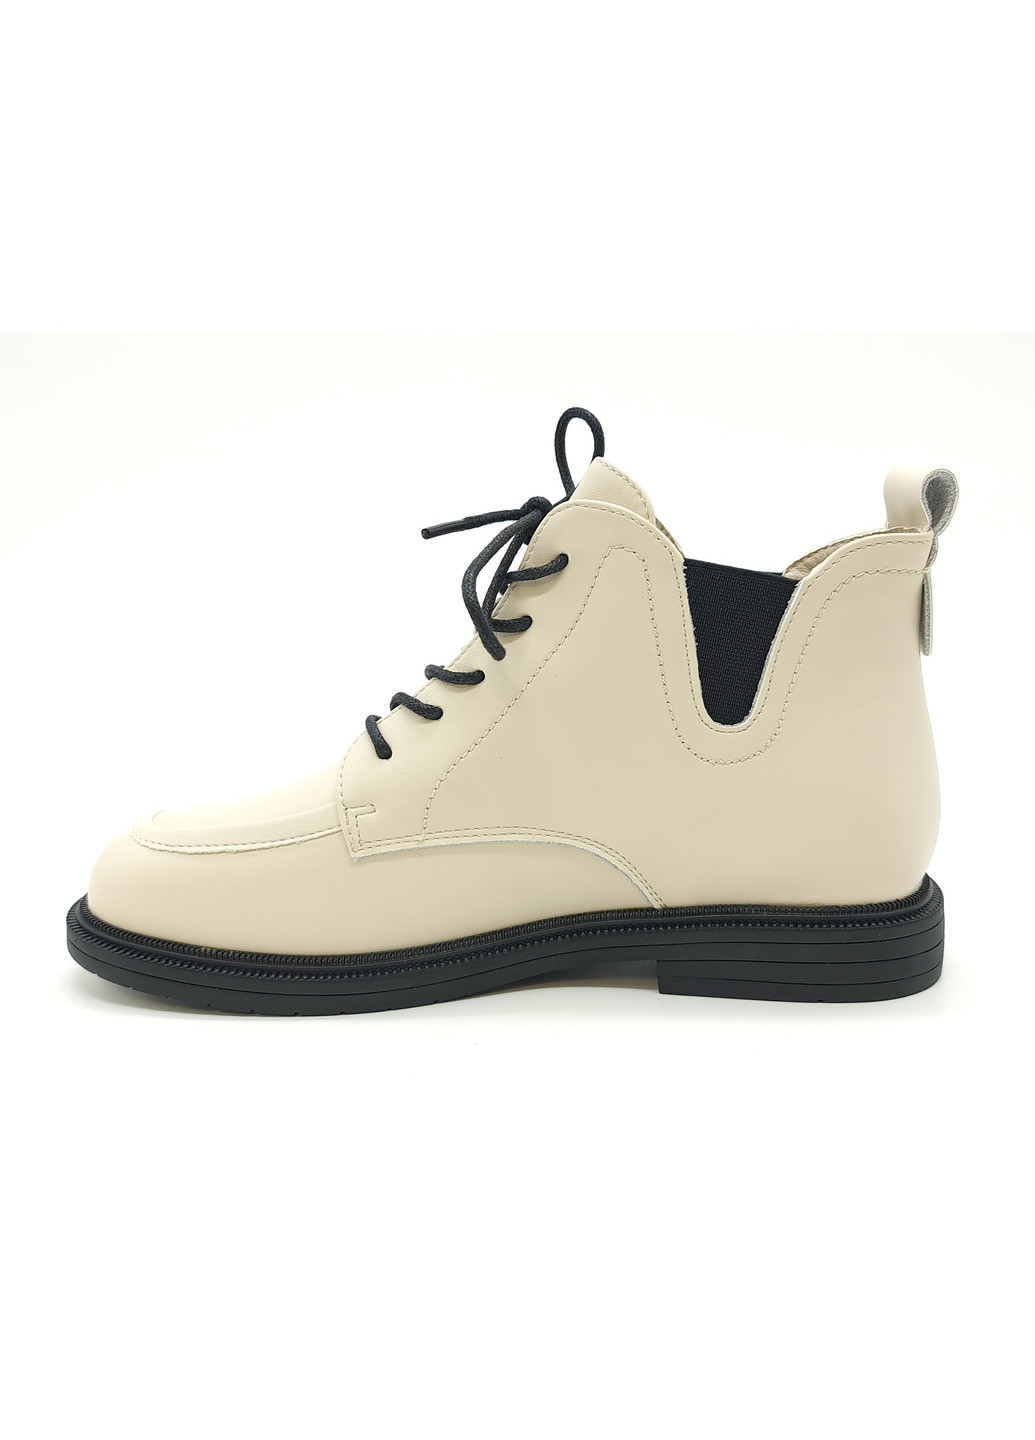 Жіночі черевики бежеві шкіряні YA-18-11 24,5 см (р) Yalasou (260010354)